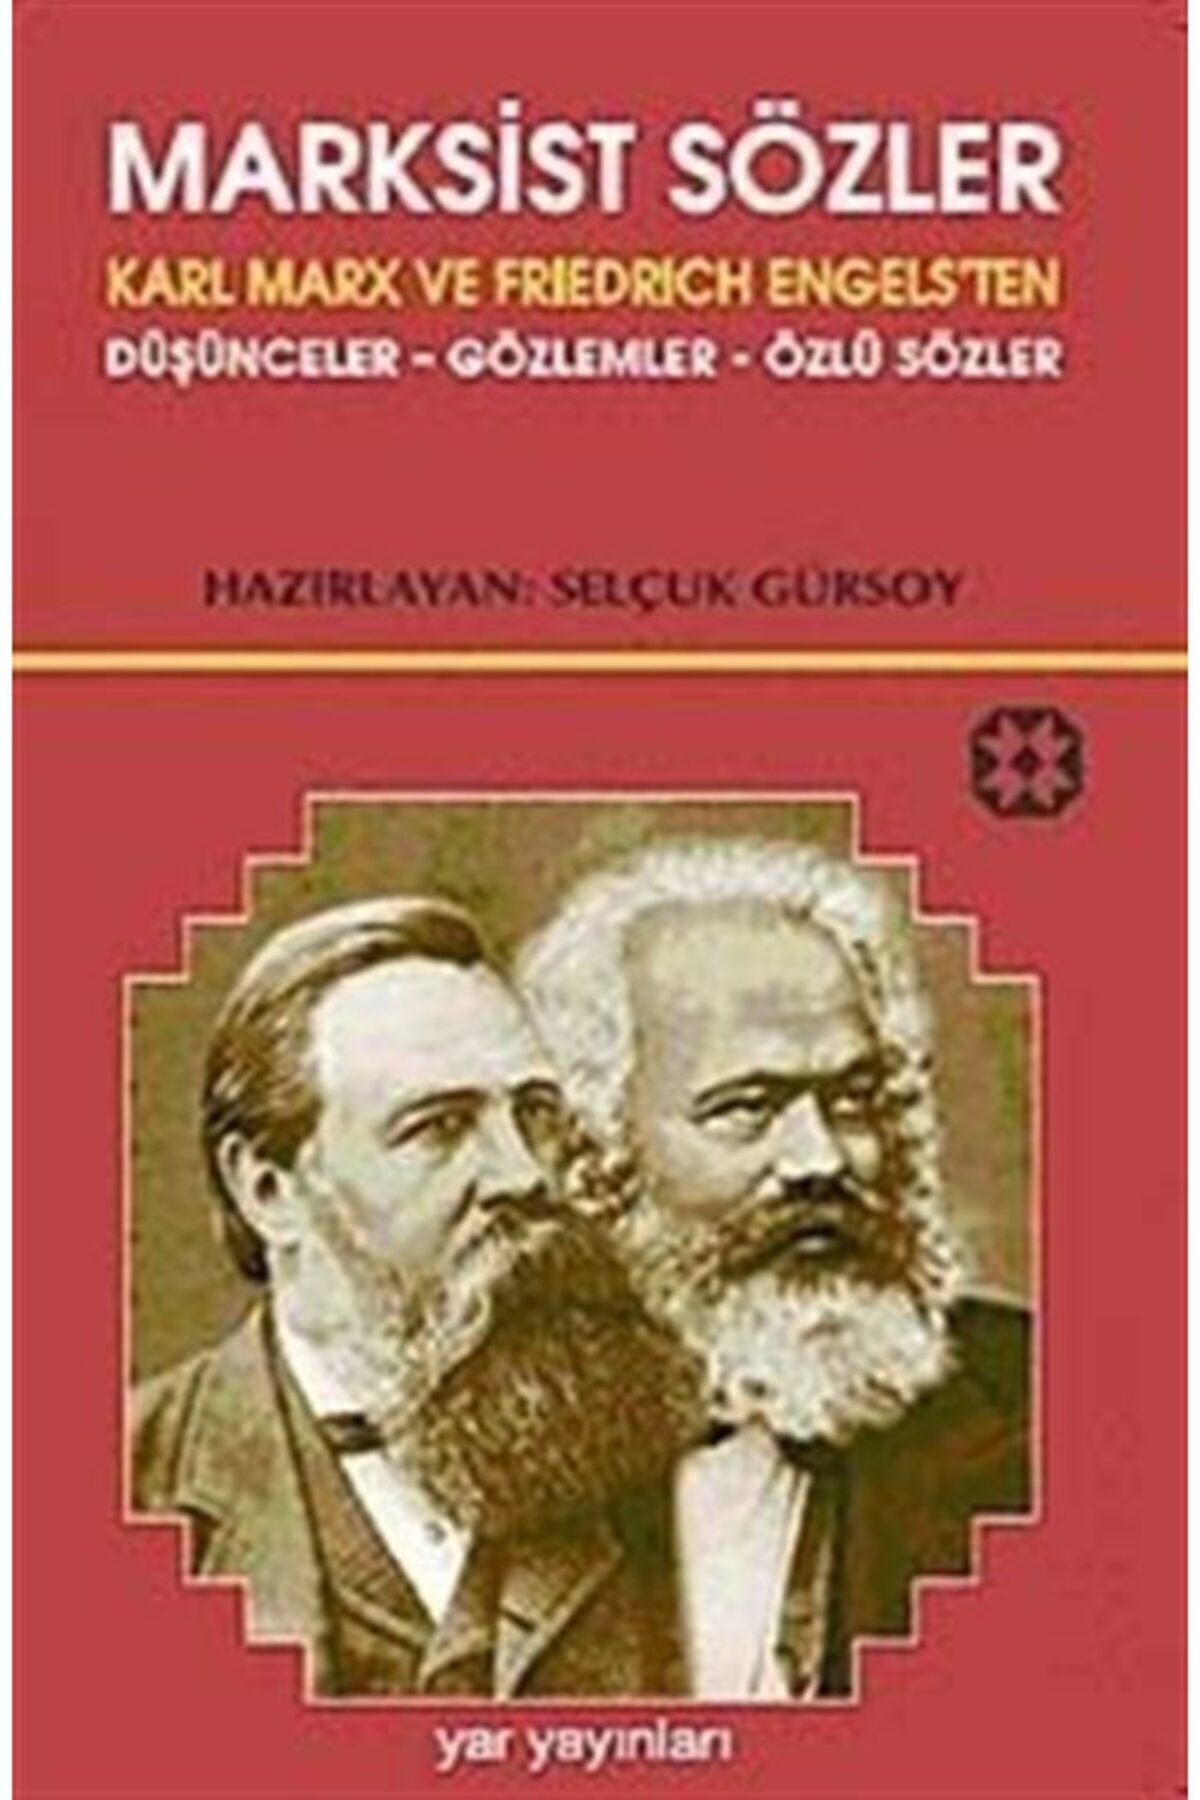 Yar Yayınları Marksist Sözler & Karl Marx Ve Friedrich Engels'ten Düşünceler-gözlemler-özlü Sözler